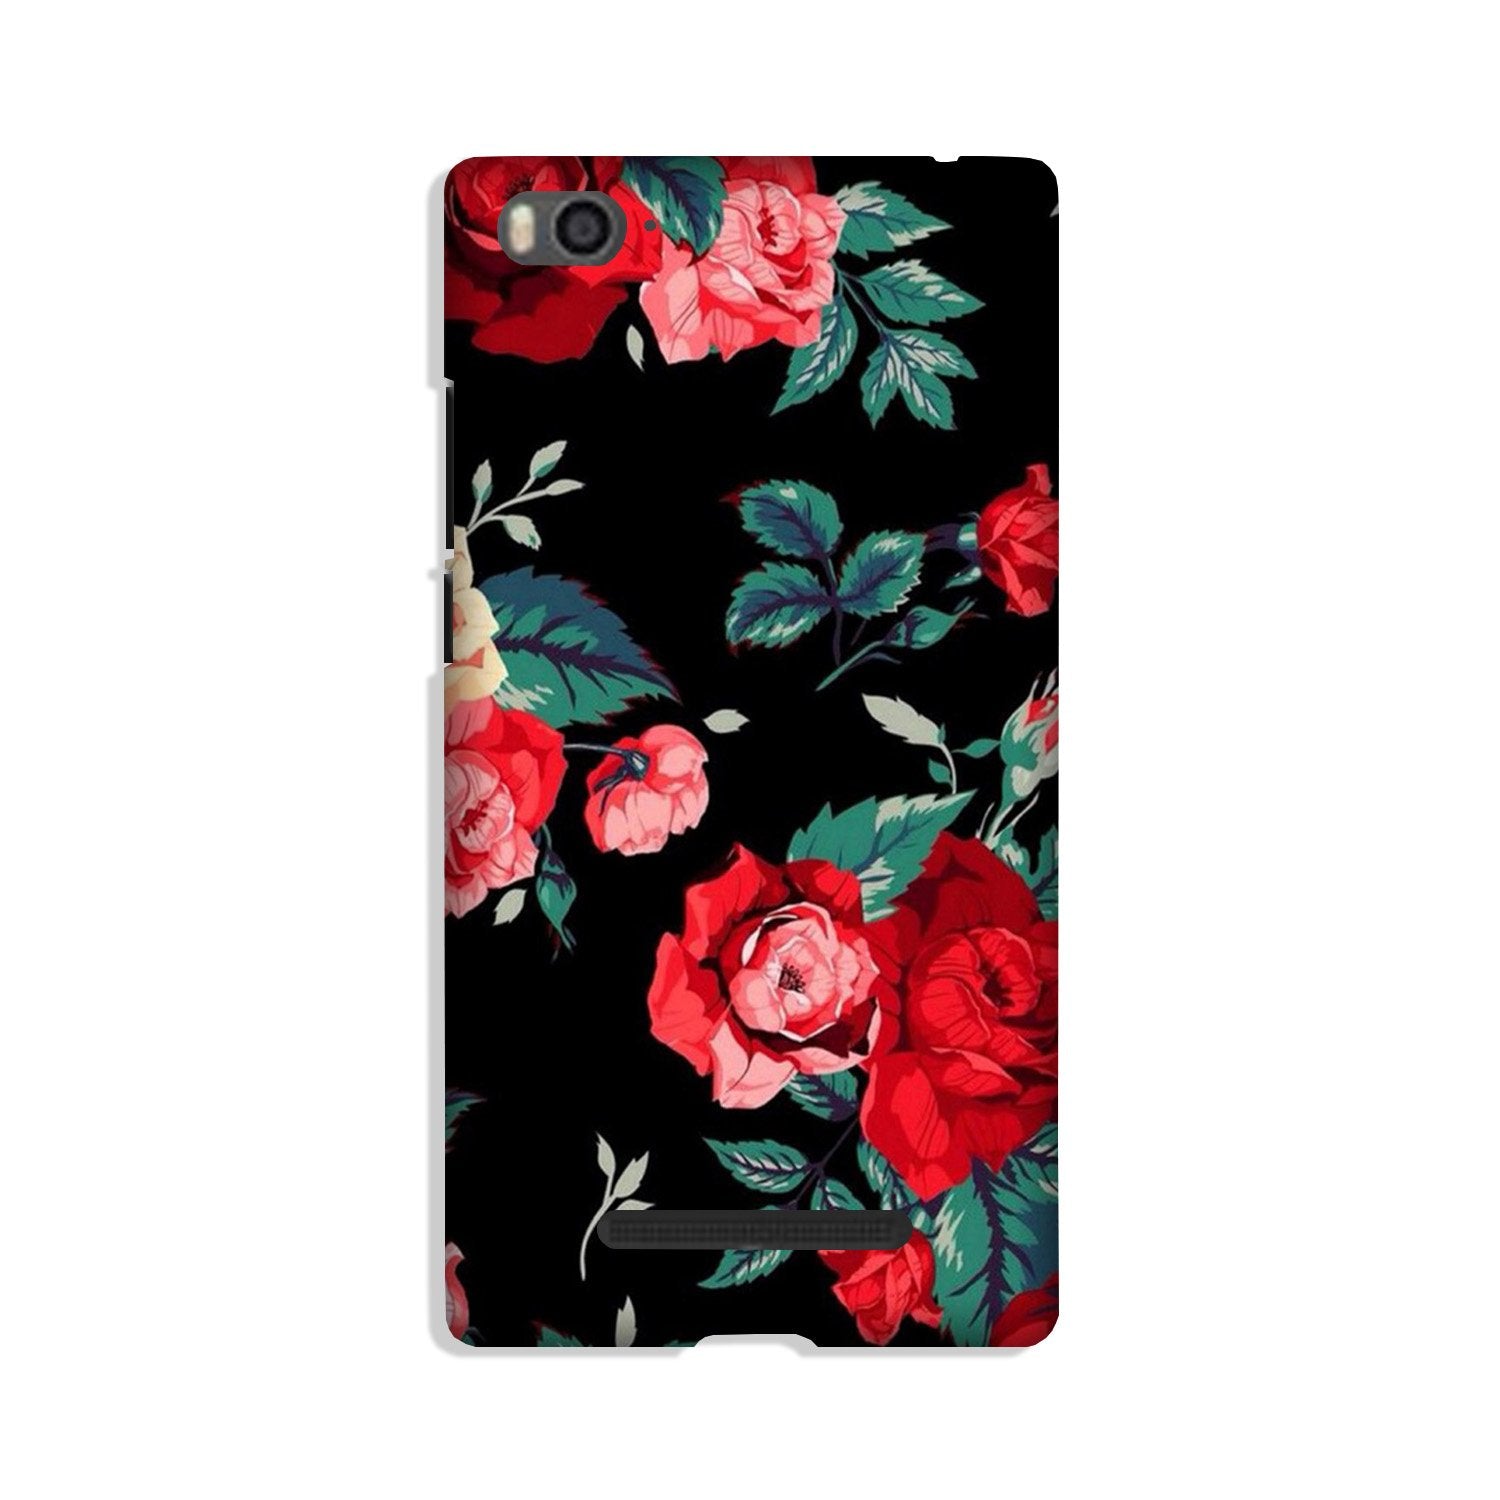 Red Rose2 Case for Xiaomi Redmi 5A